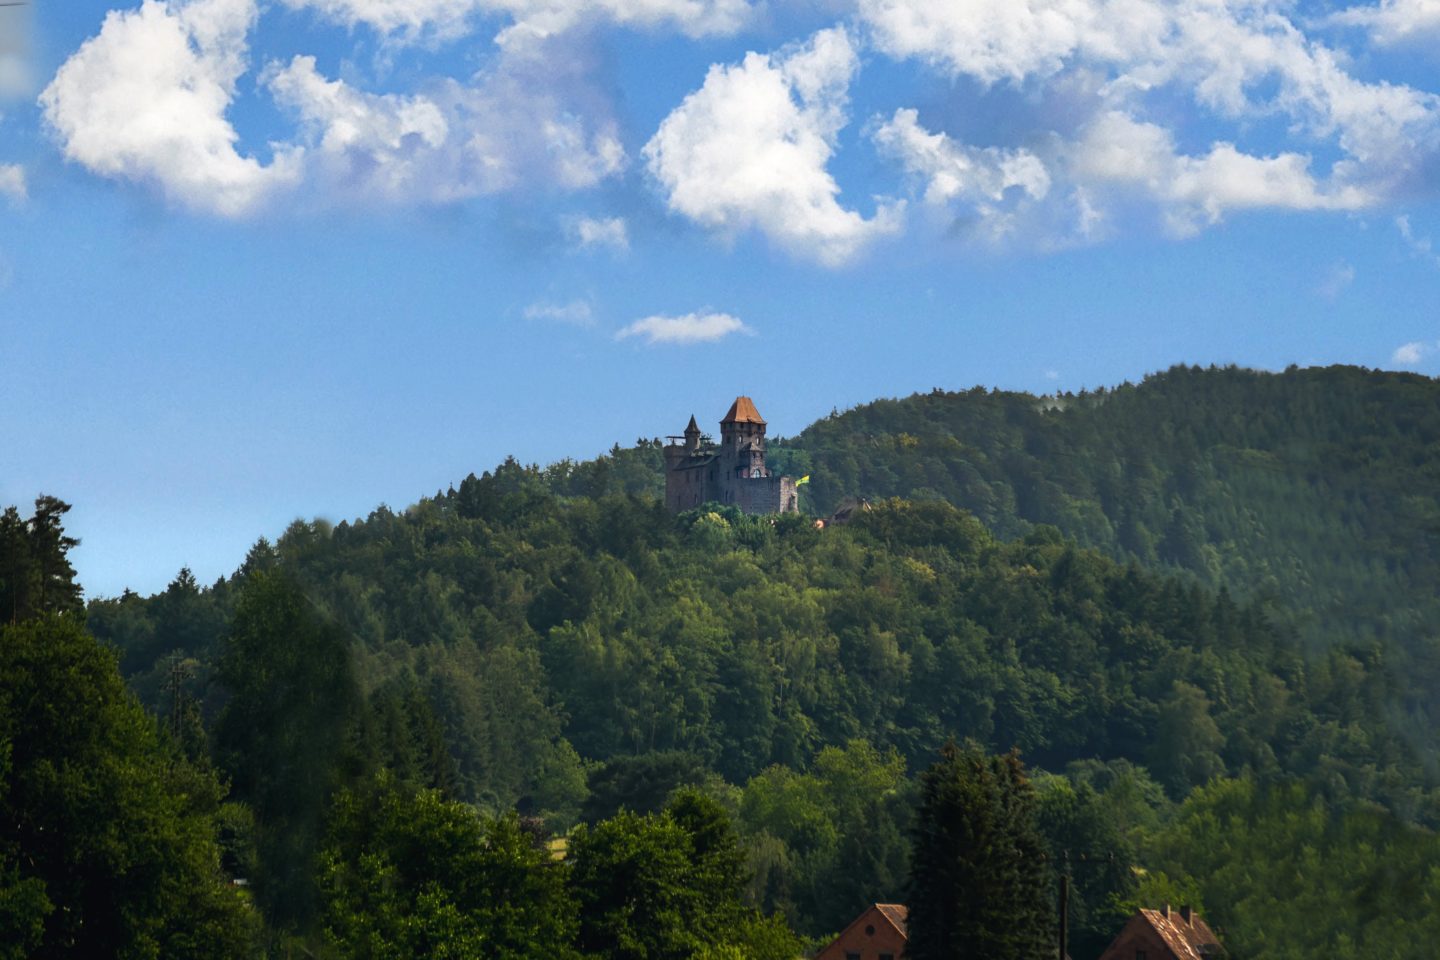 Burg Berwartstein in the forest